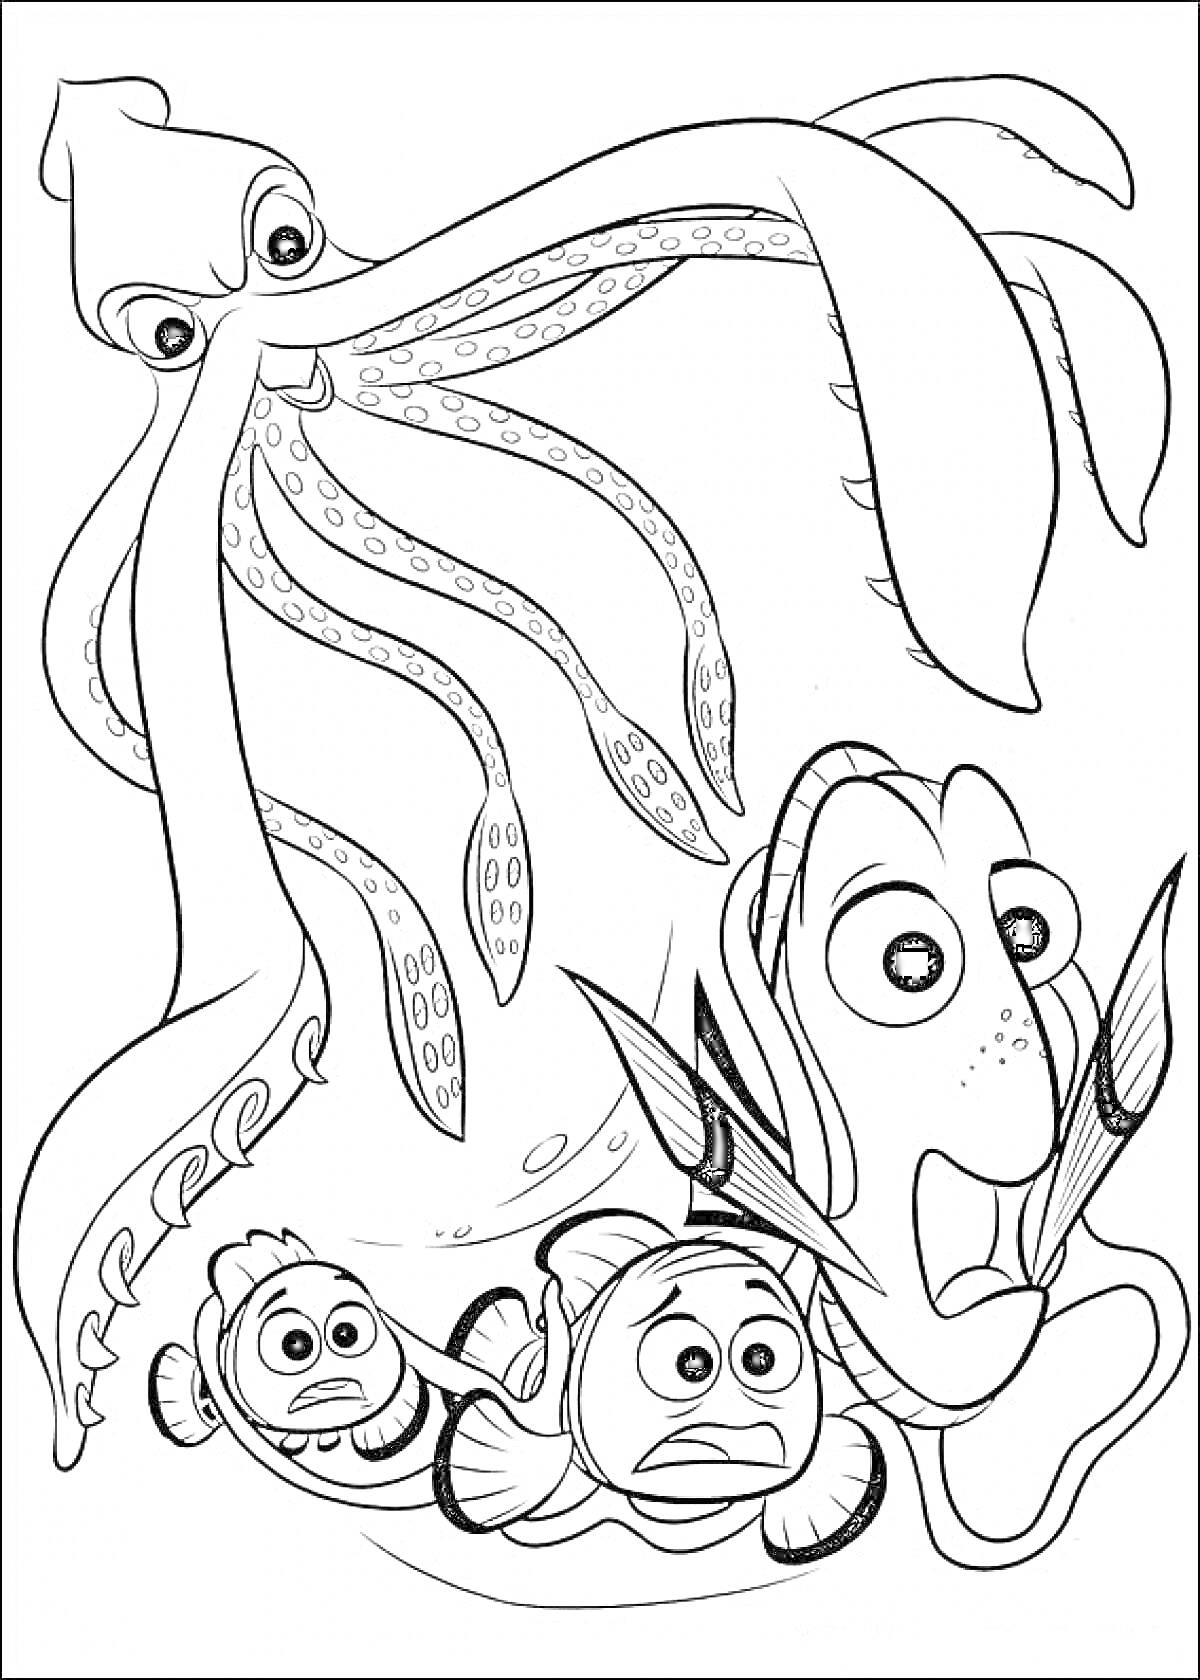 Раскраска Осьминог и рыбки в поисках Дори, осьминог, Дори, Немо и Марлин под водой